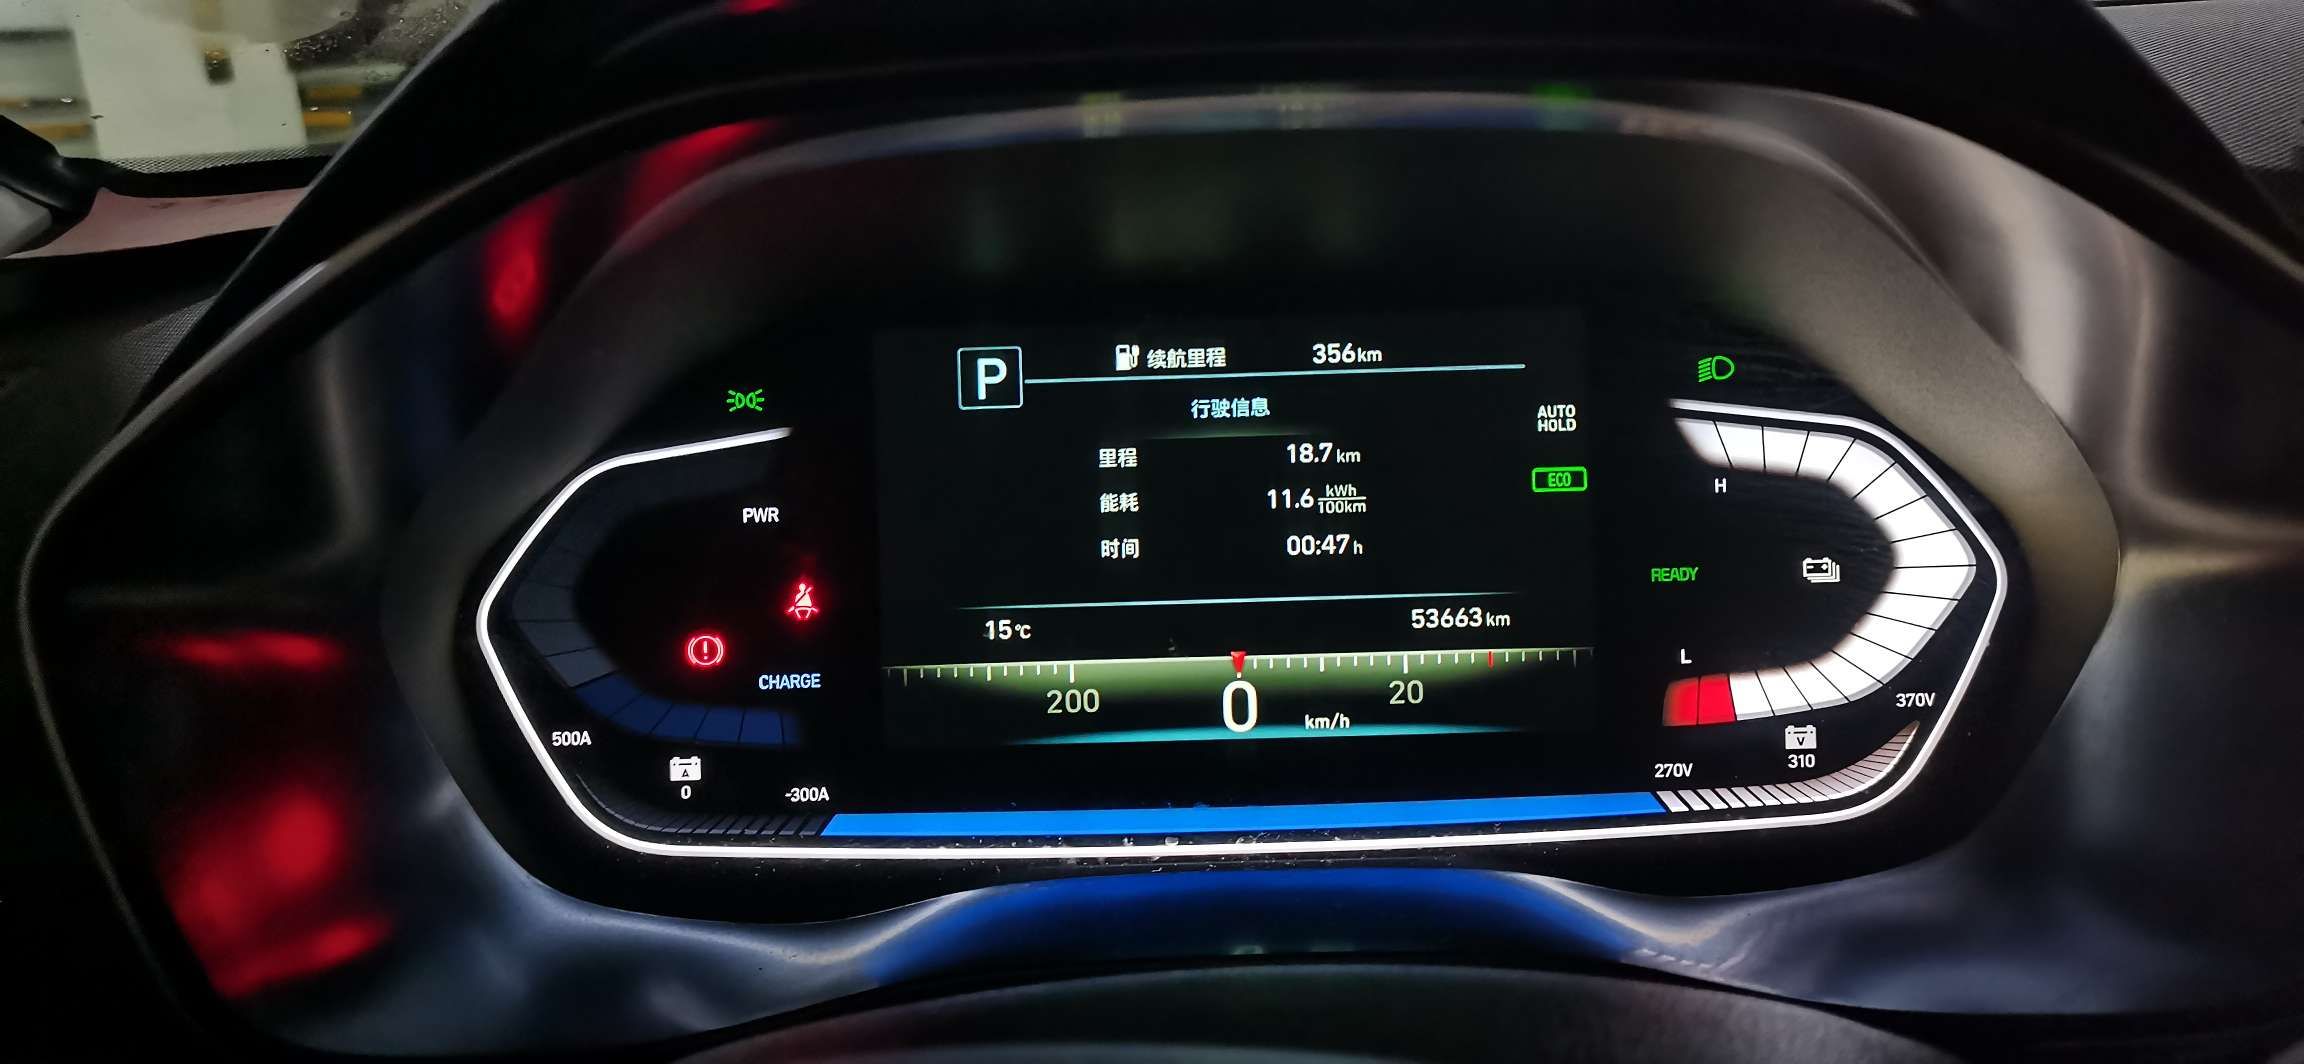 城市:北京
车型:菲斯塔电动
电耗:11.6